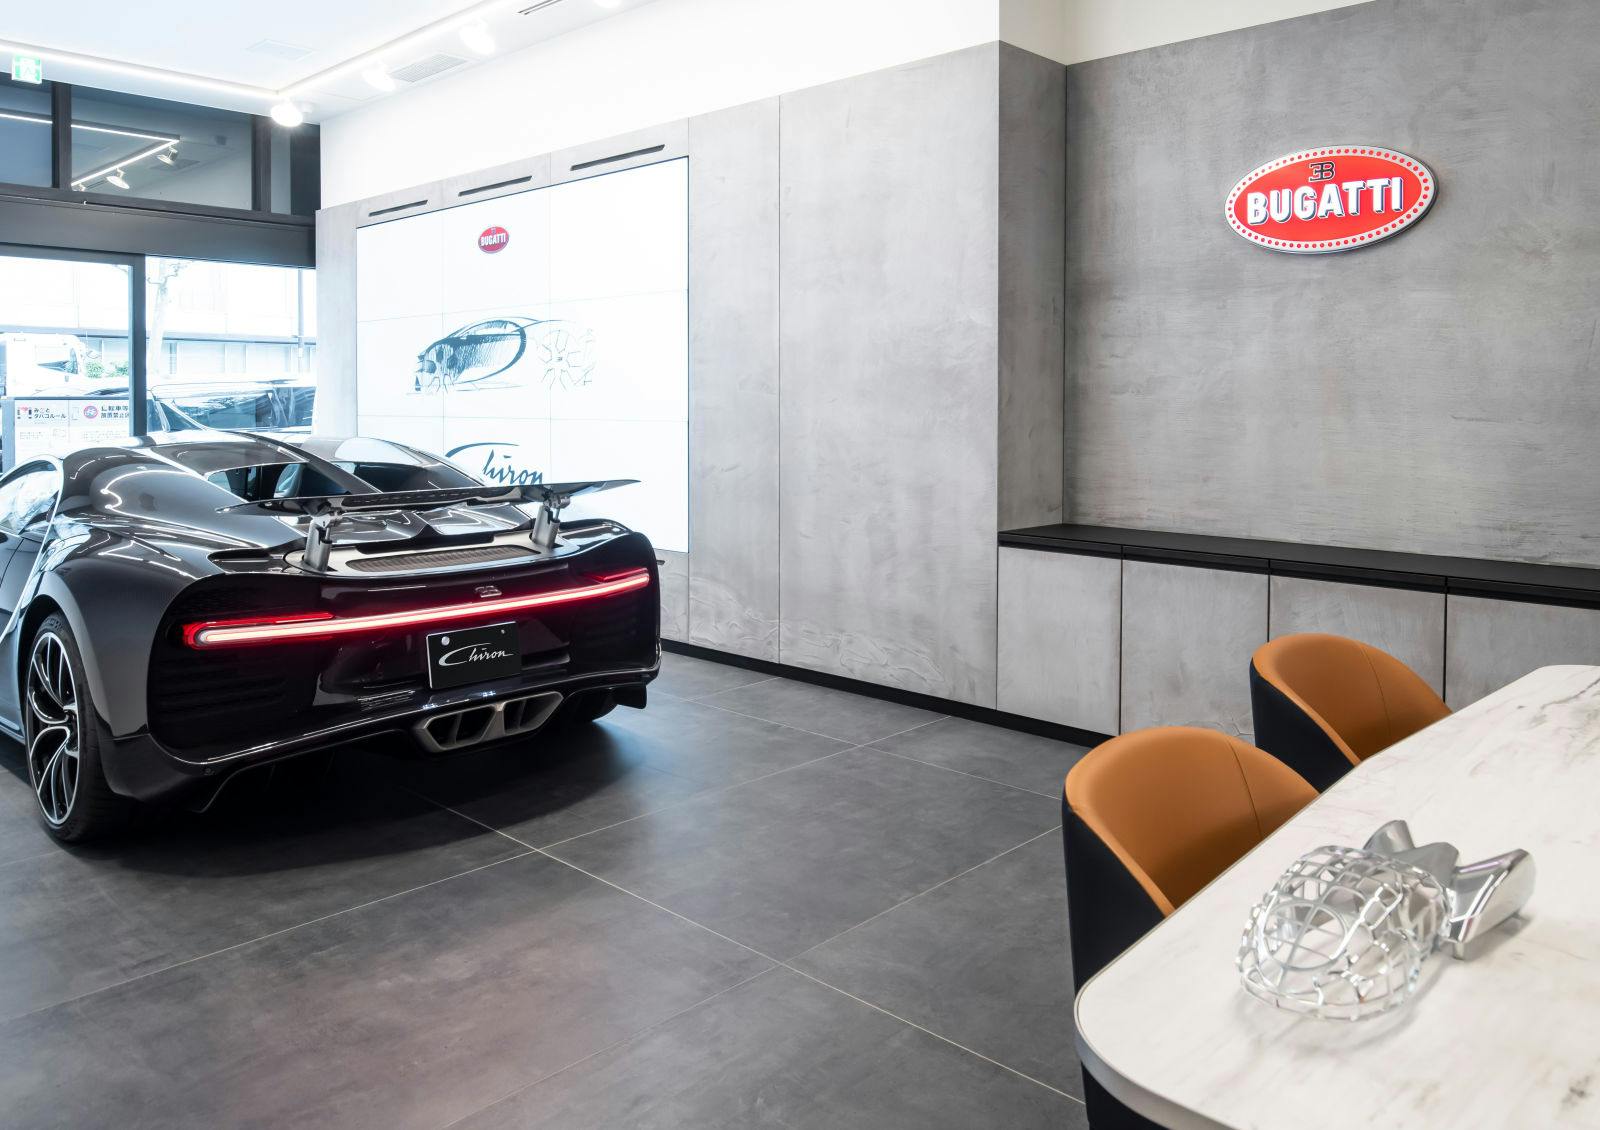 Une inauguration spéciale : le nouveau showroom Bugatti Tokyo ouvre ses portes peu de temps après l'homologation de la légendaire Bugatti Chiron au Japon.